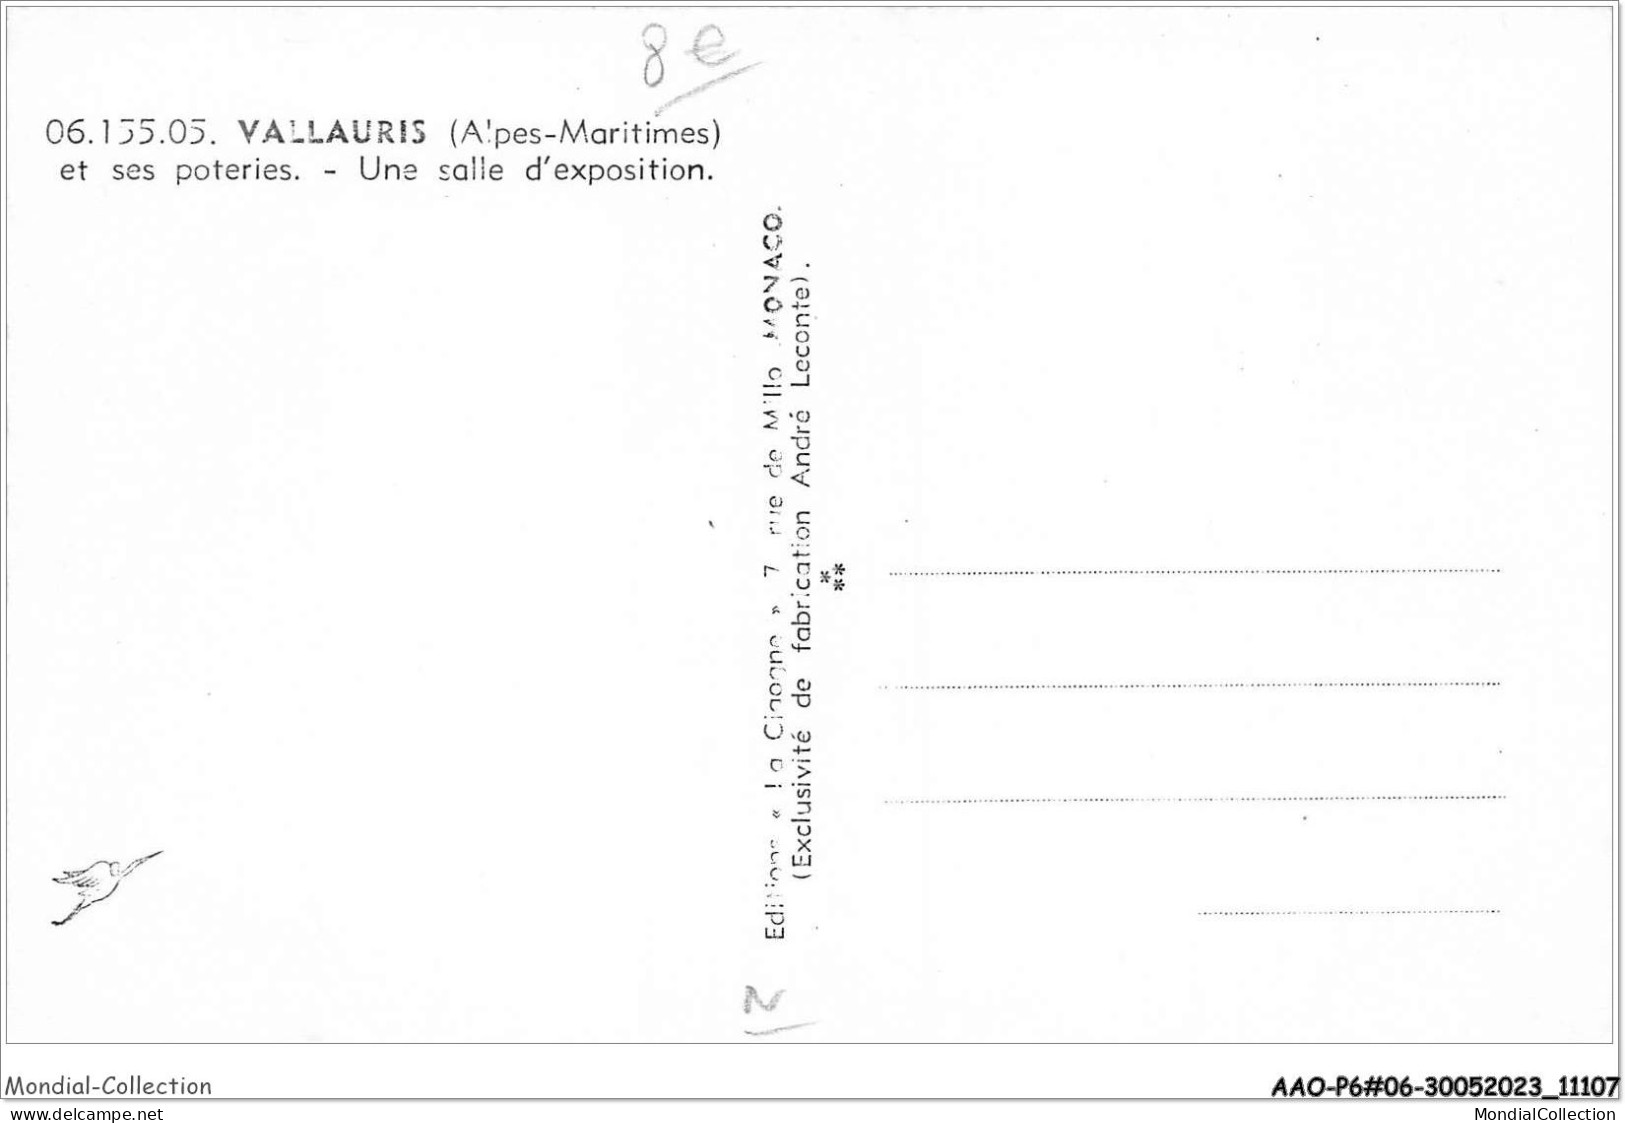 AAOP6-06-0507 - VALLAURIS Et Ses Poteries - Une Salle D'exposition - Vallauris